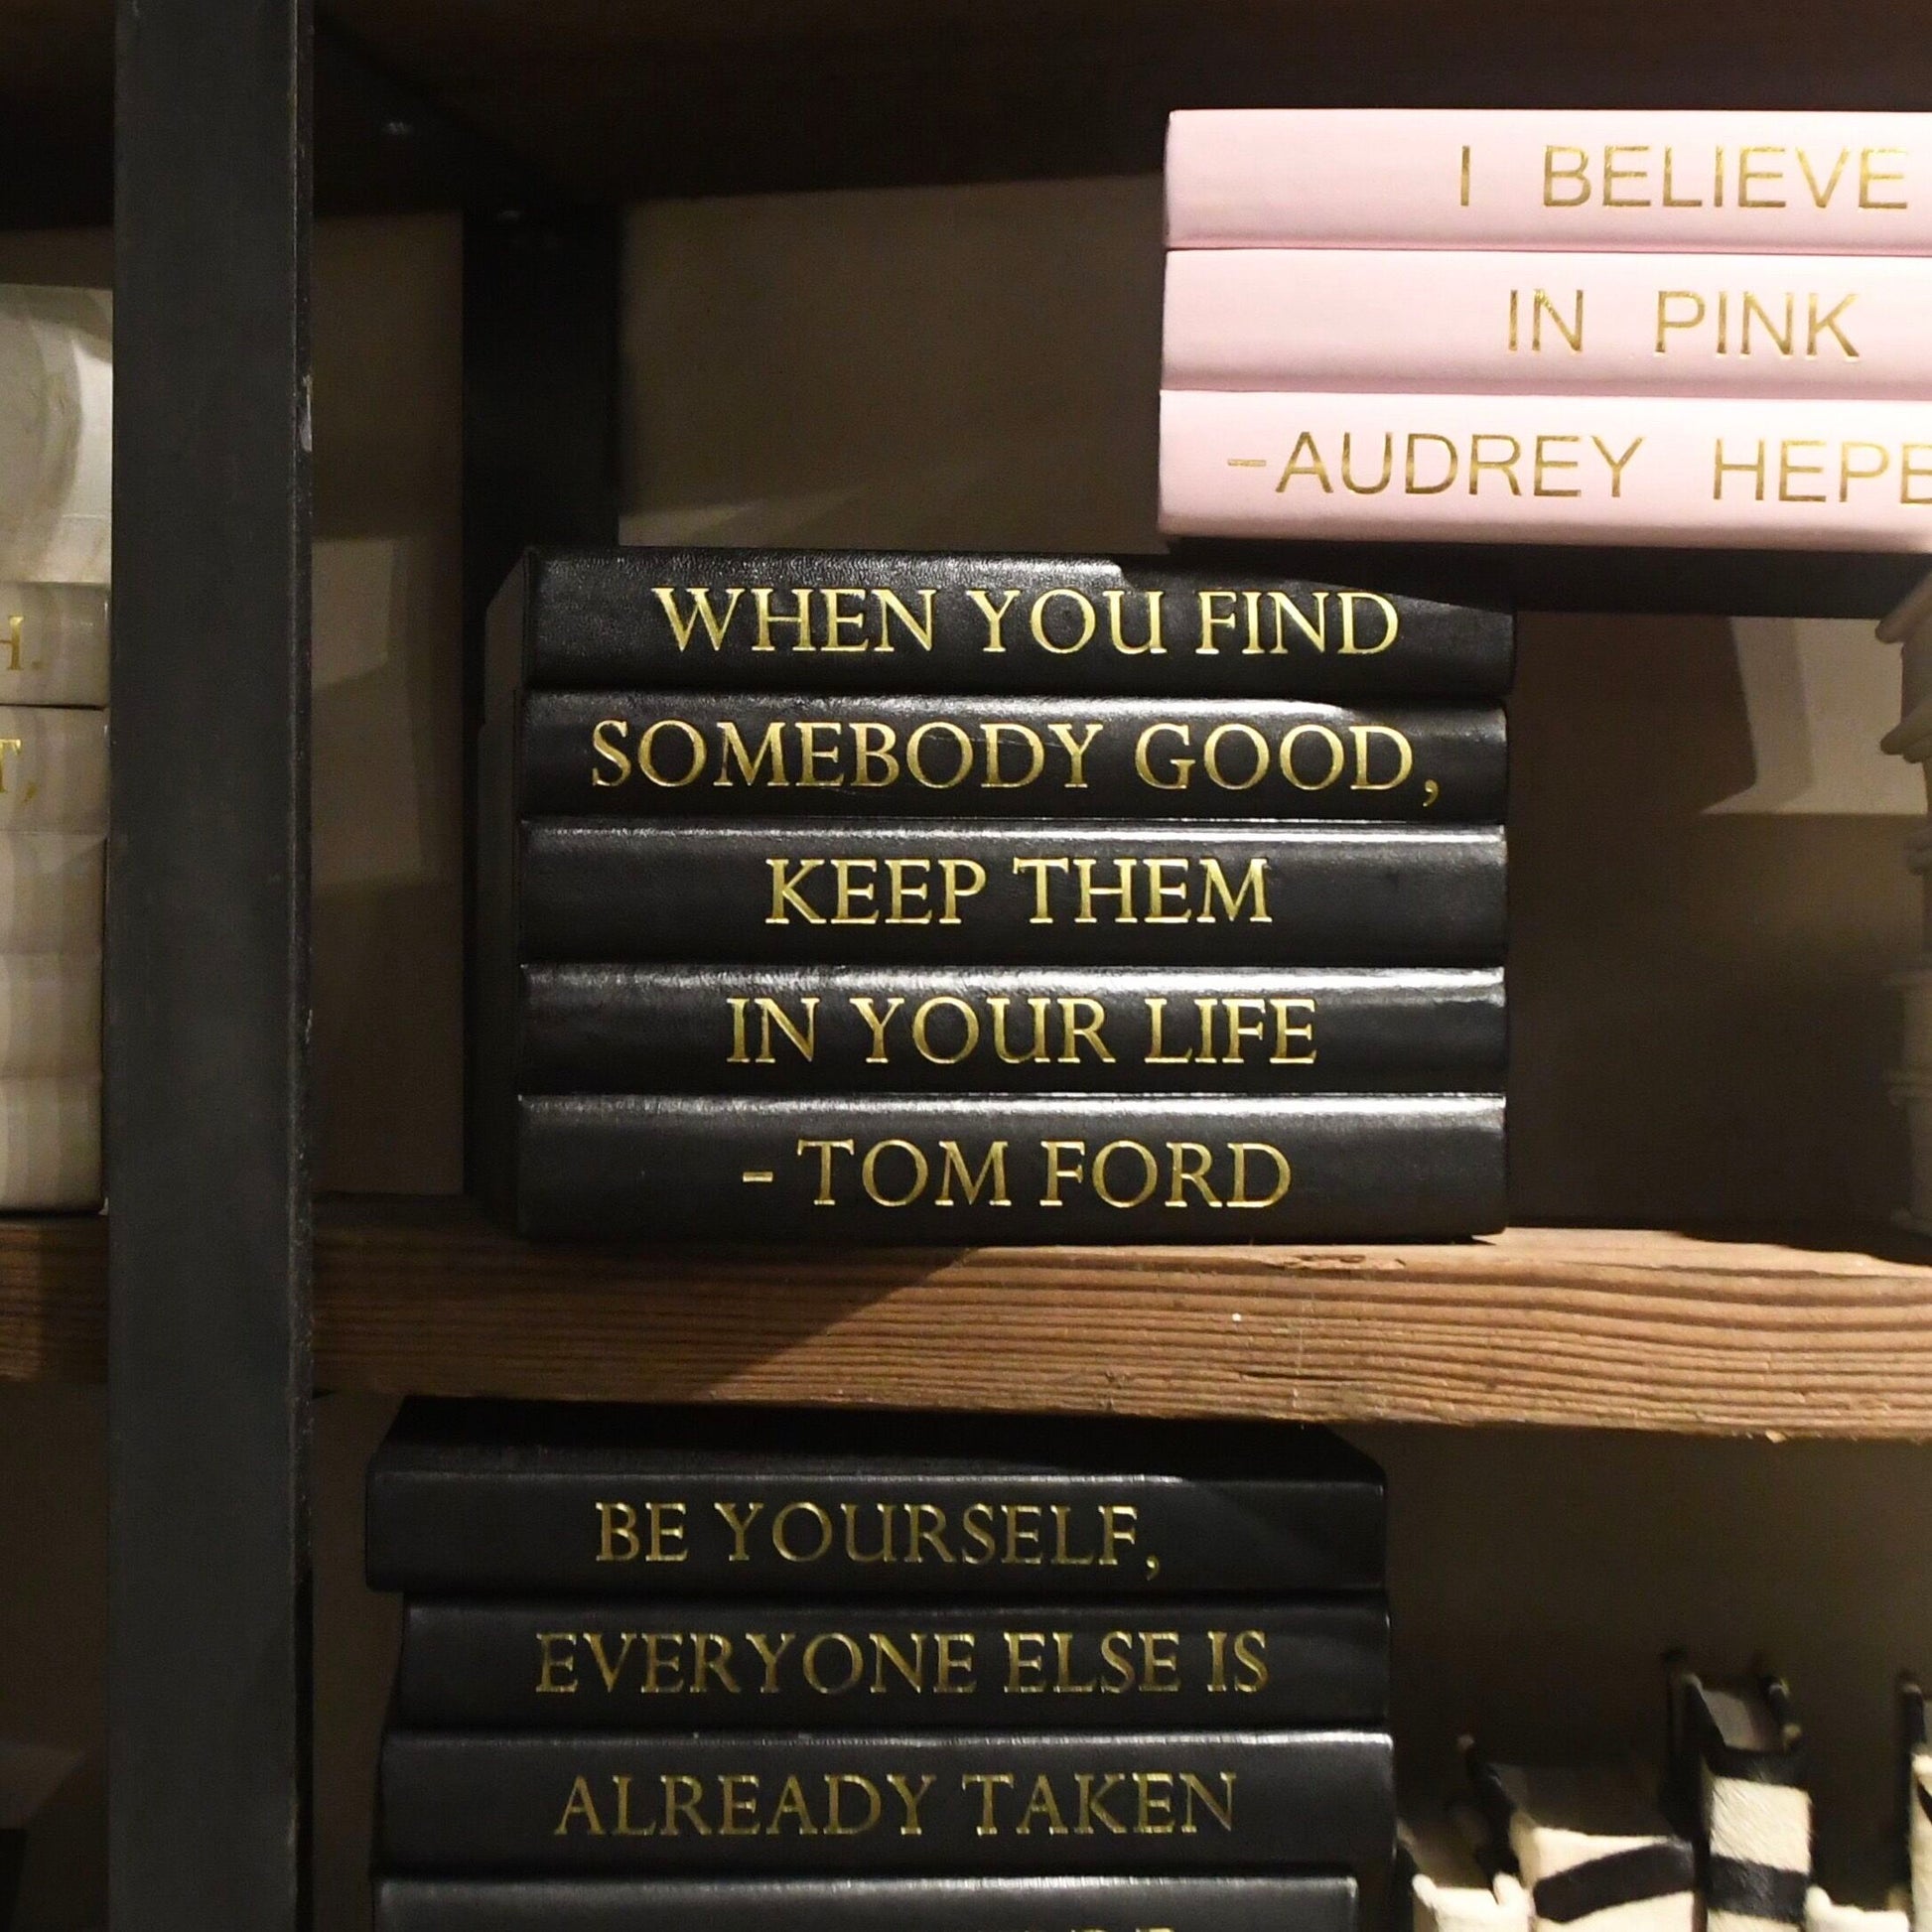 Tom Ford book box set e Lawrence shelving market